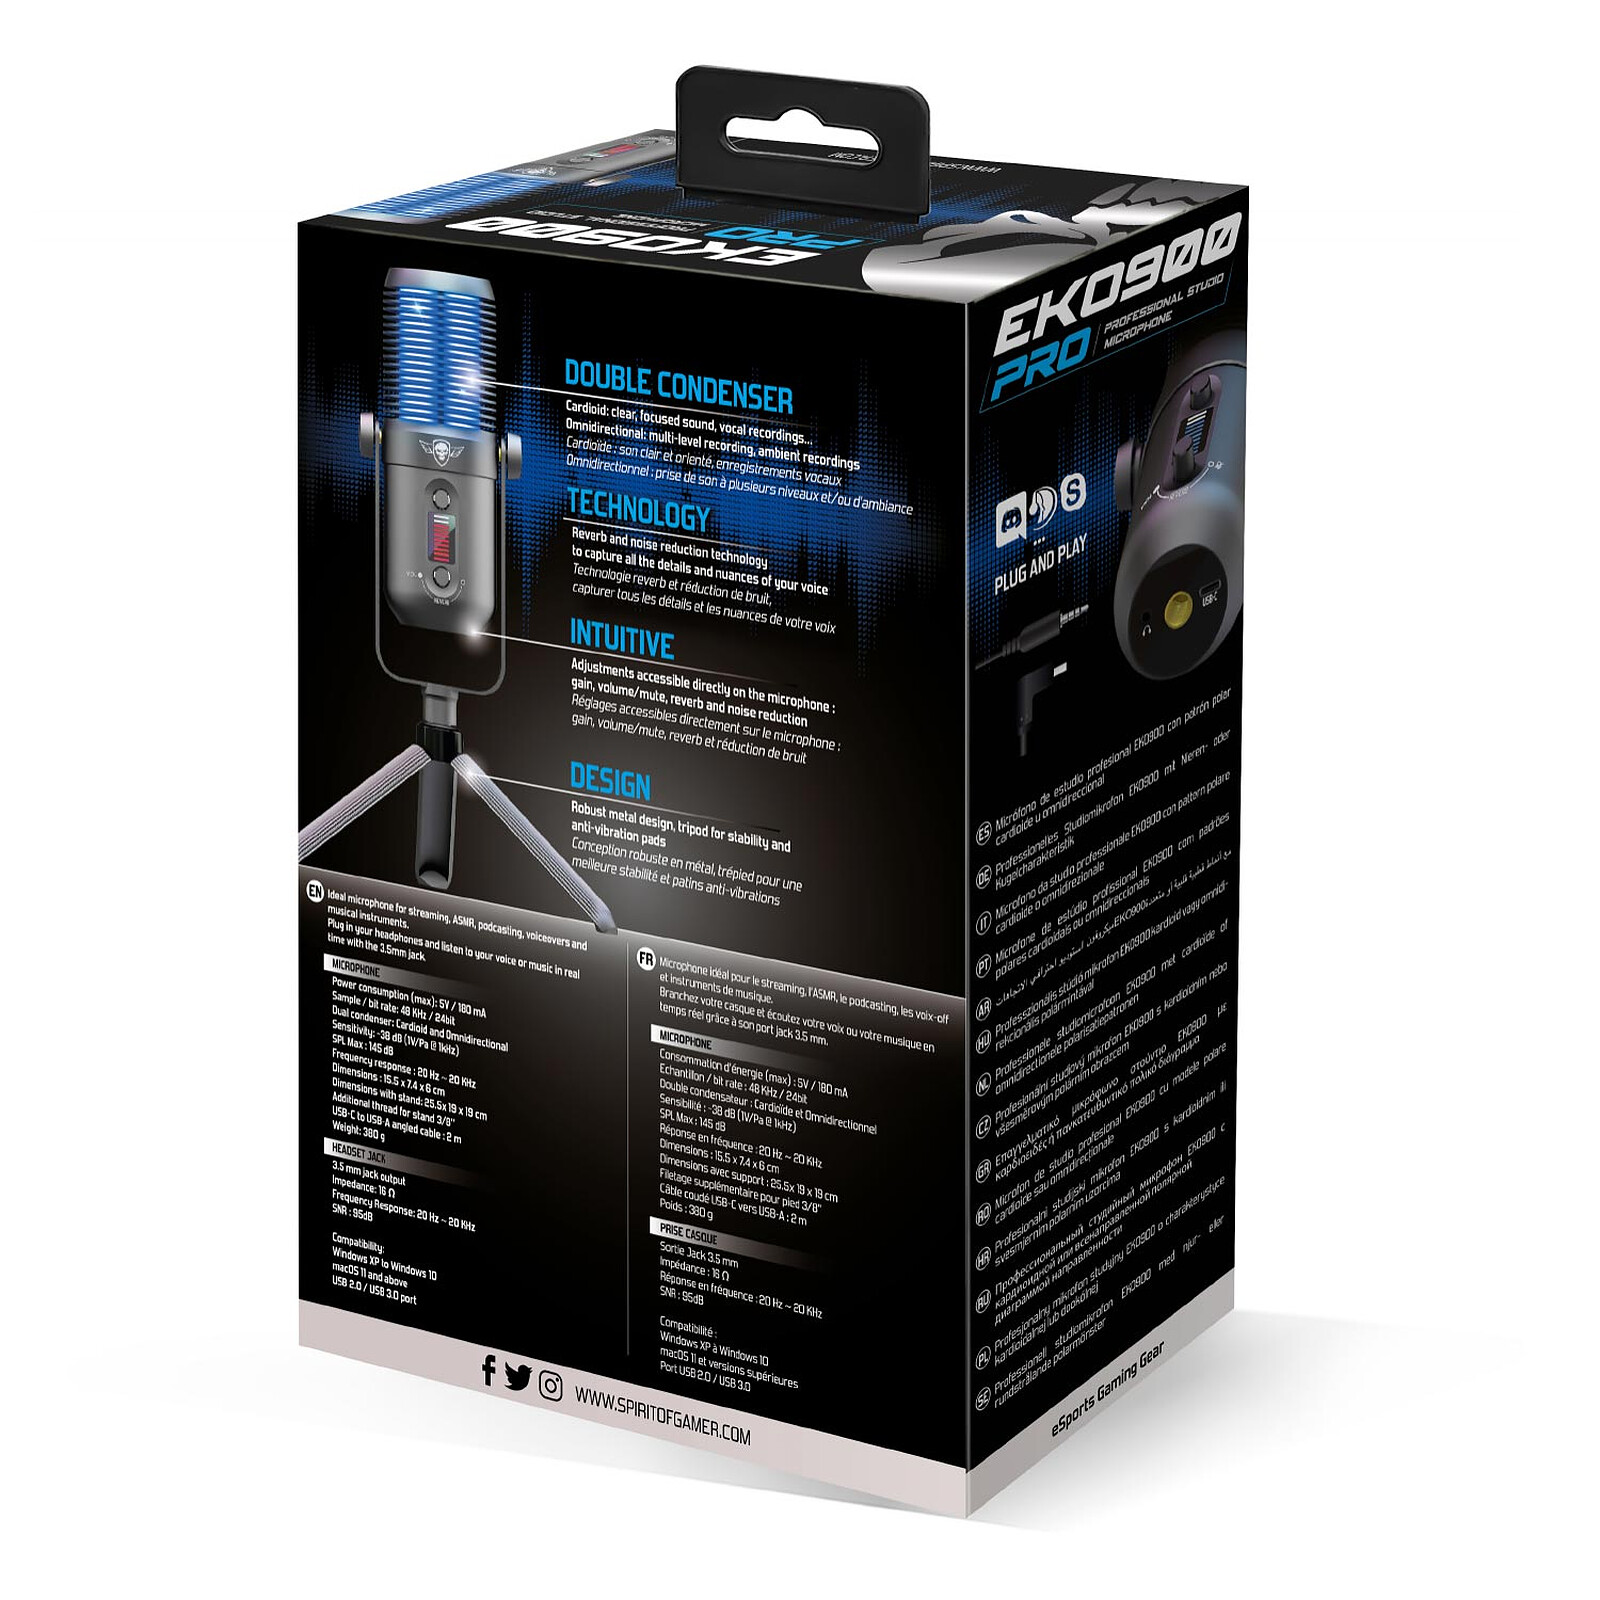 Support de microphone Tonor Q9 + microphone à condensateur USB